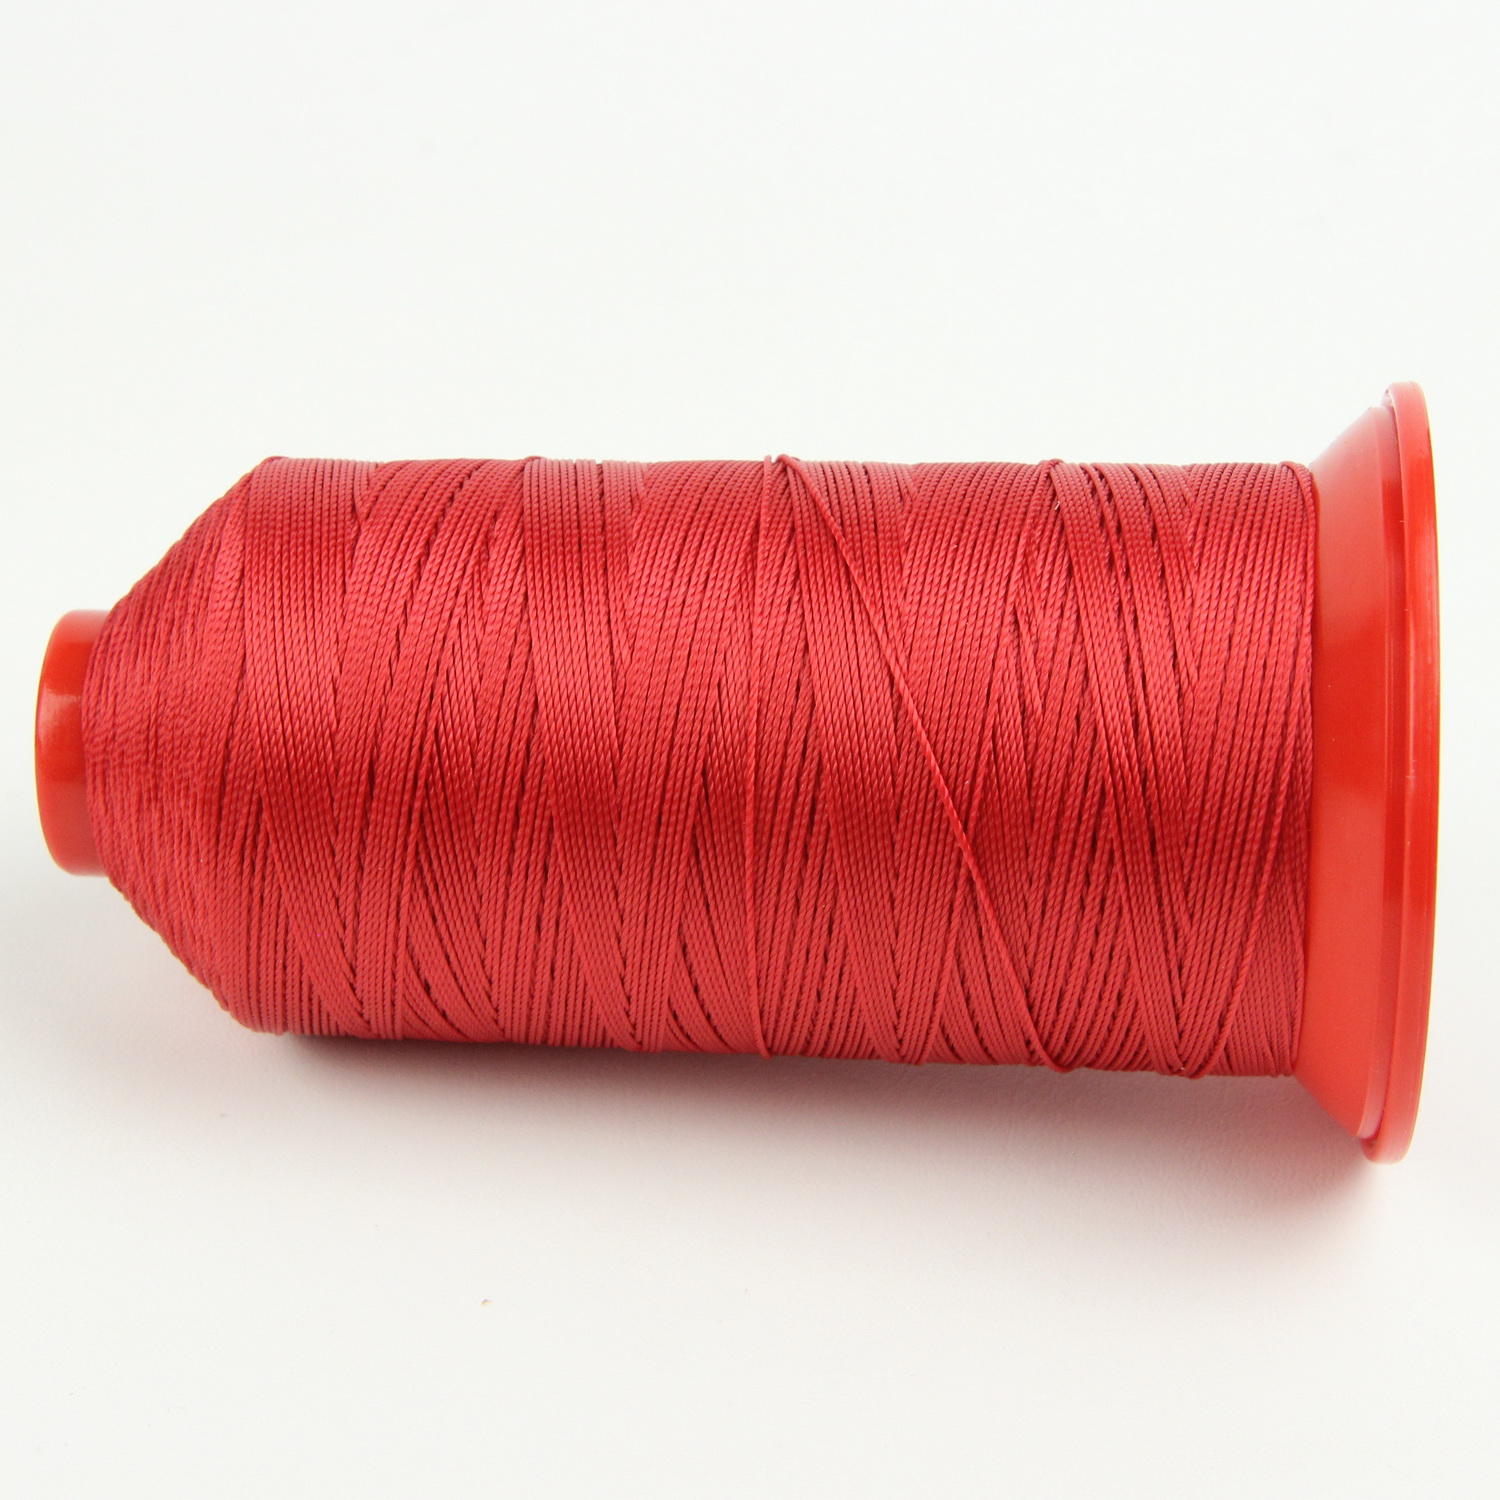 Нить POLYART(ПОЛИАРТ) N10 цвет 1644 красный, для пошив чехлов на автомобильные сидения и руль, 750м детальная фотка